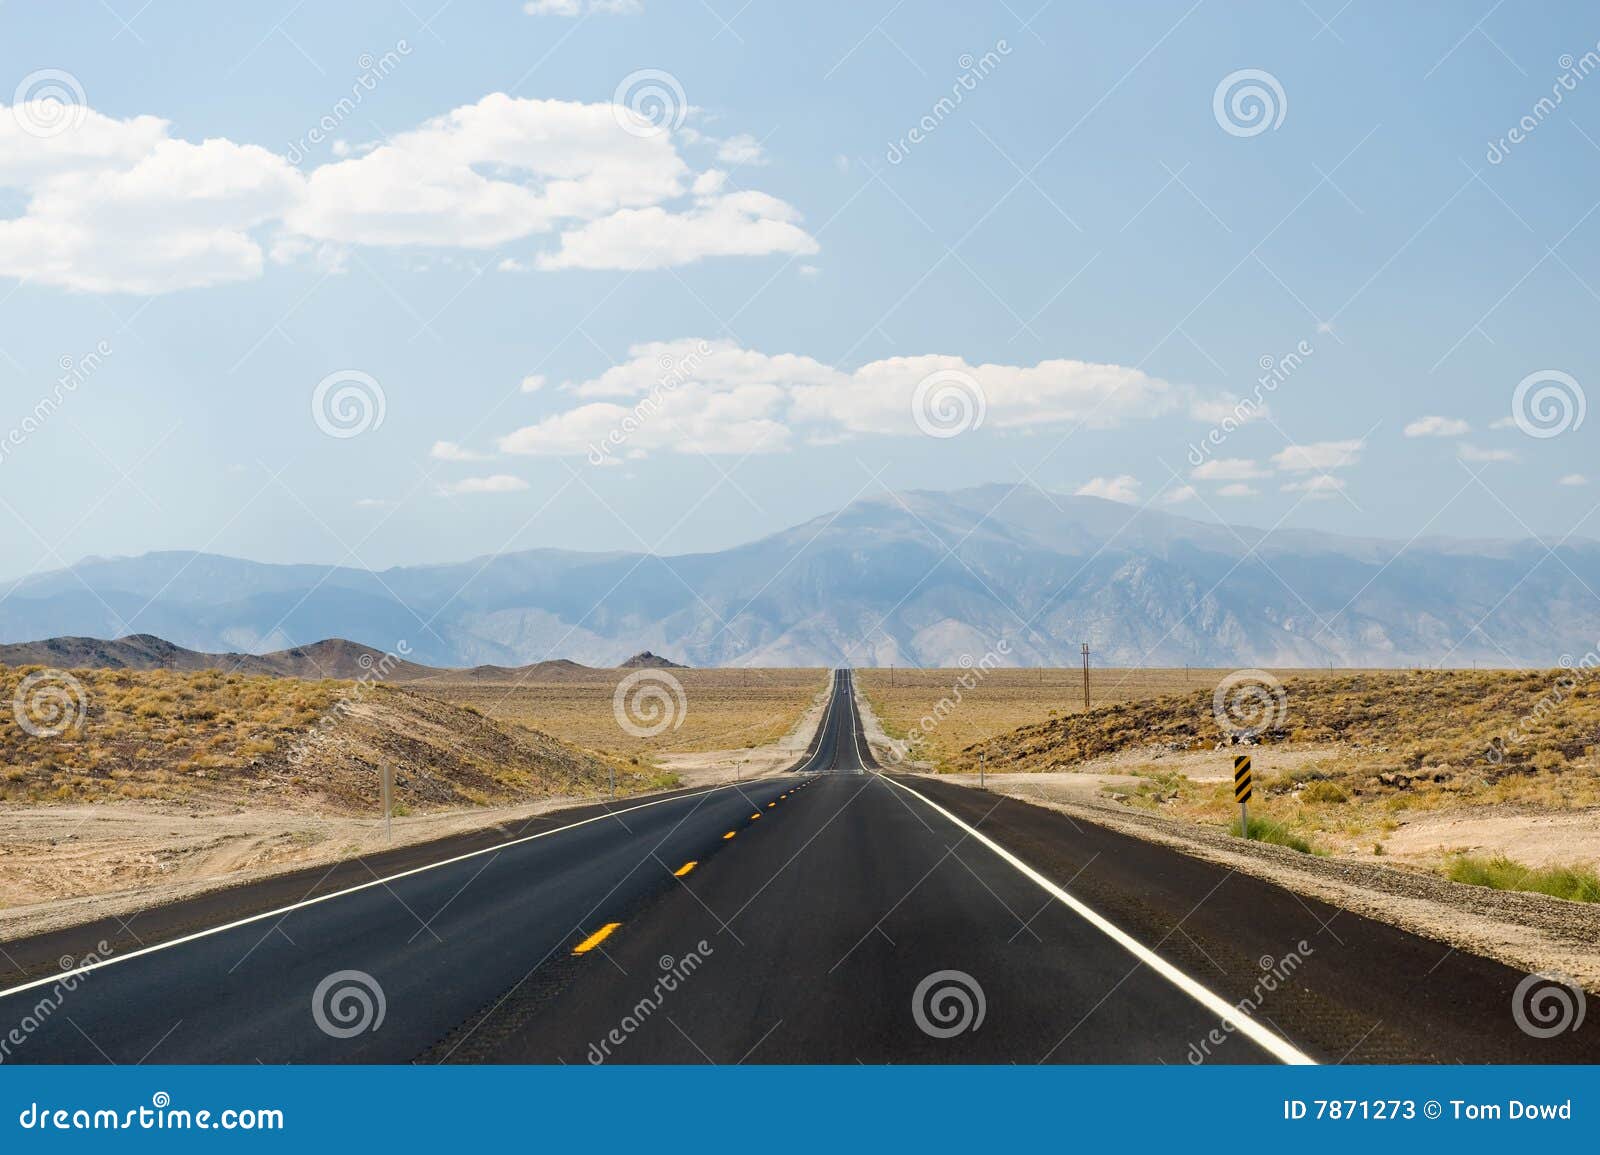 nevada desert highway